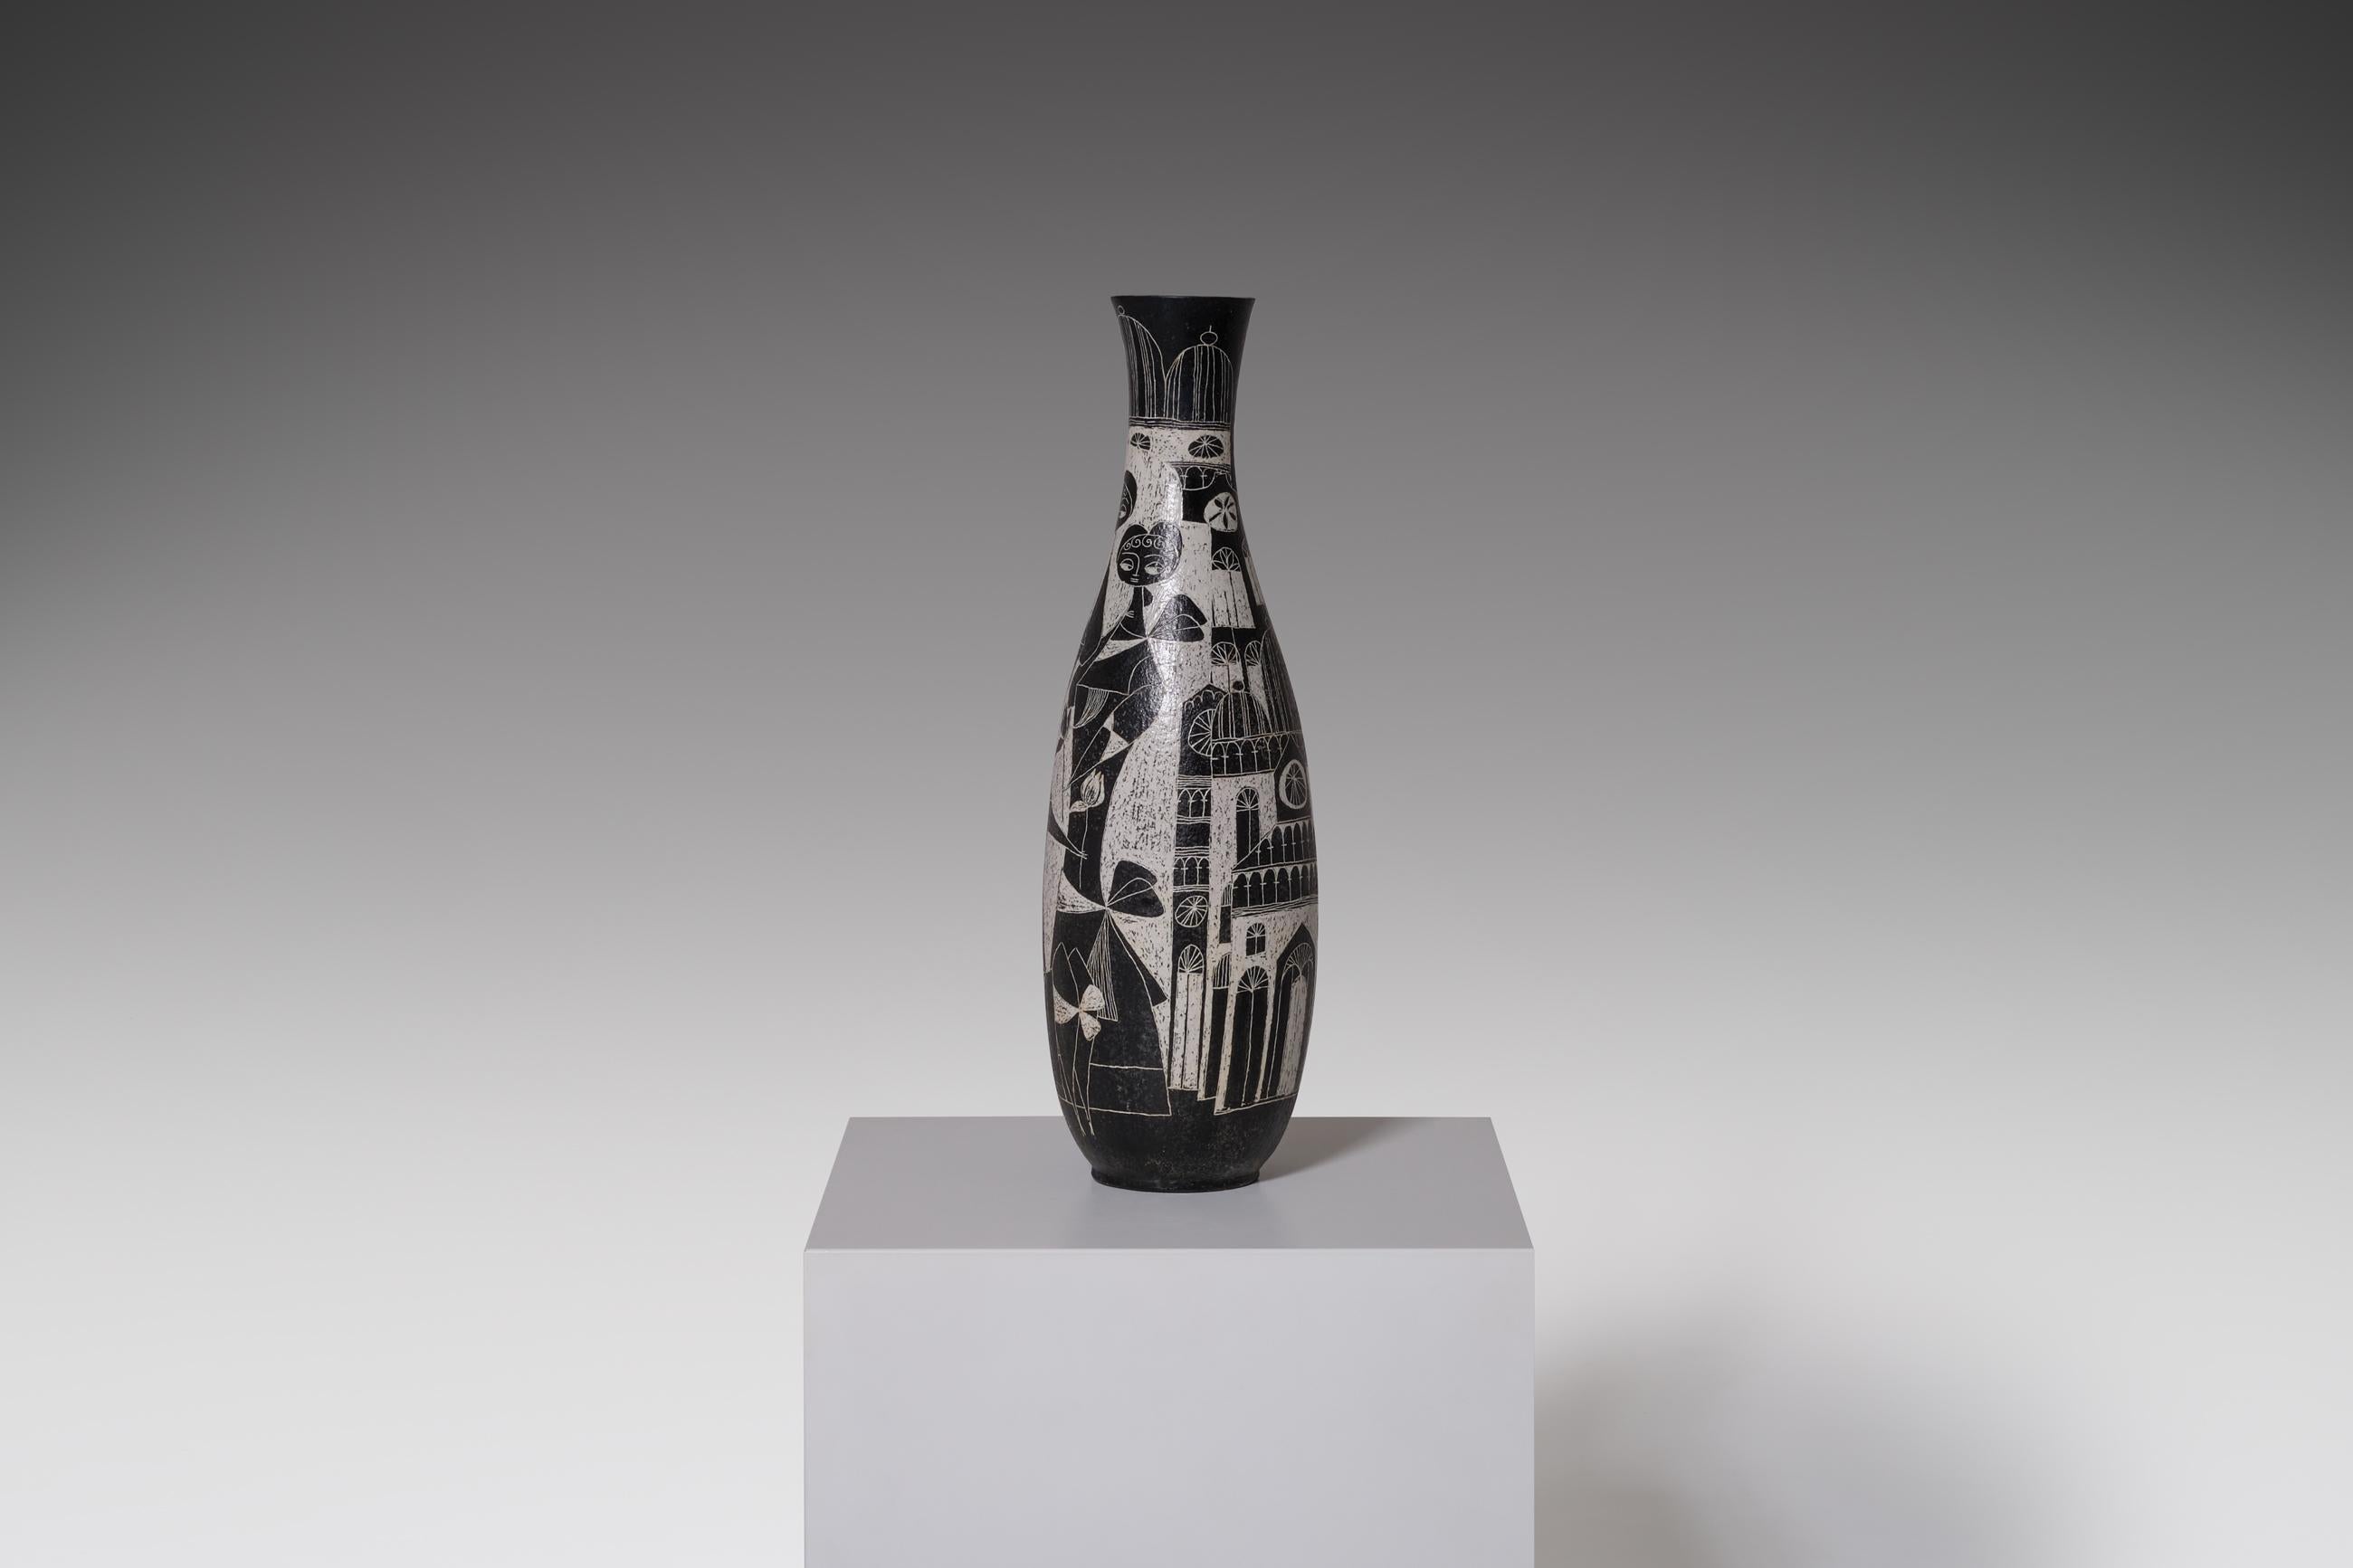 Glazed Large Ceramic Vase by Marcello Fantoni, Italy